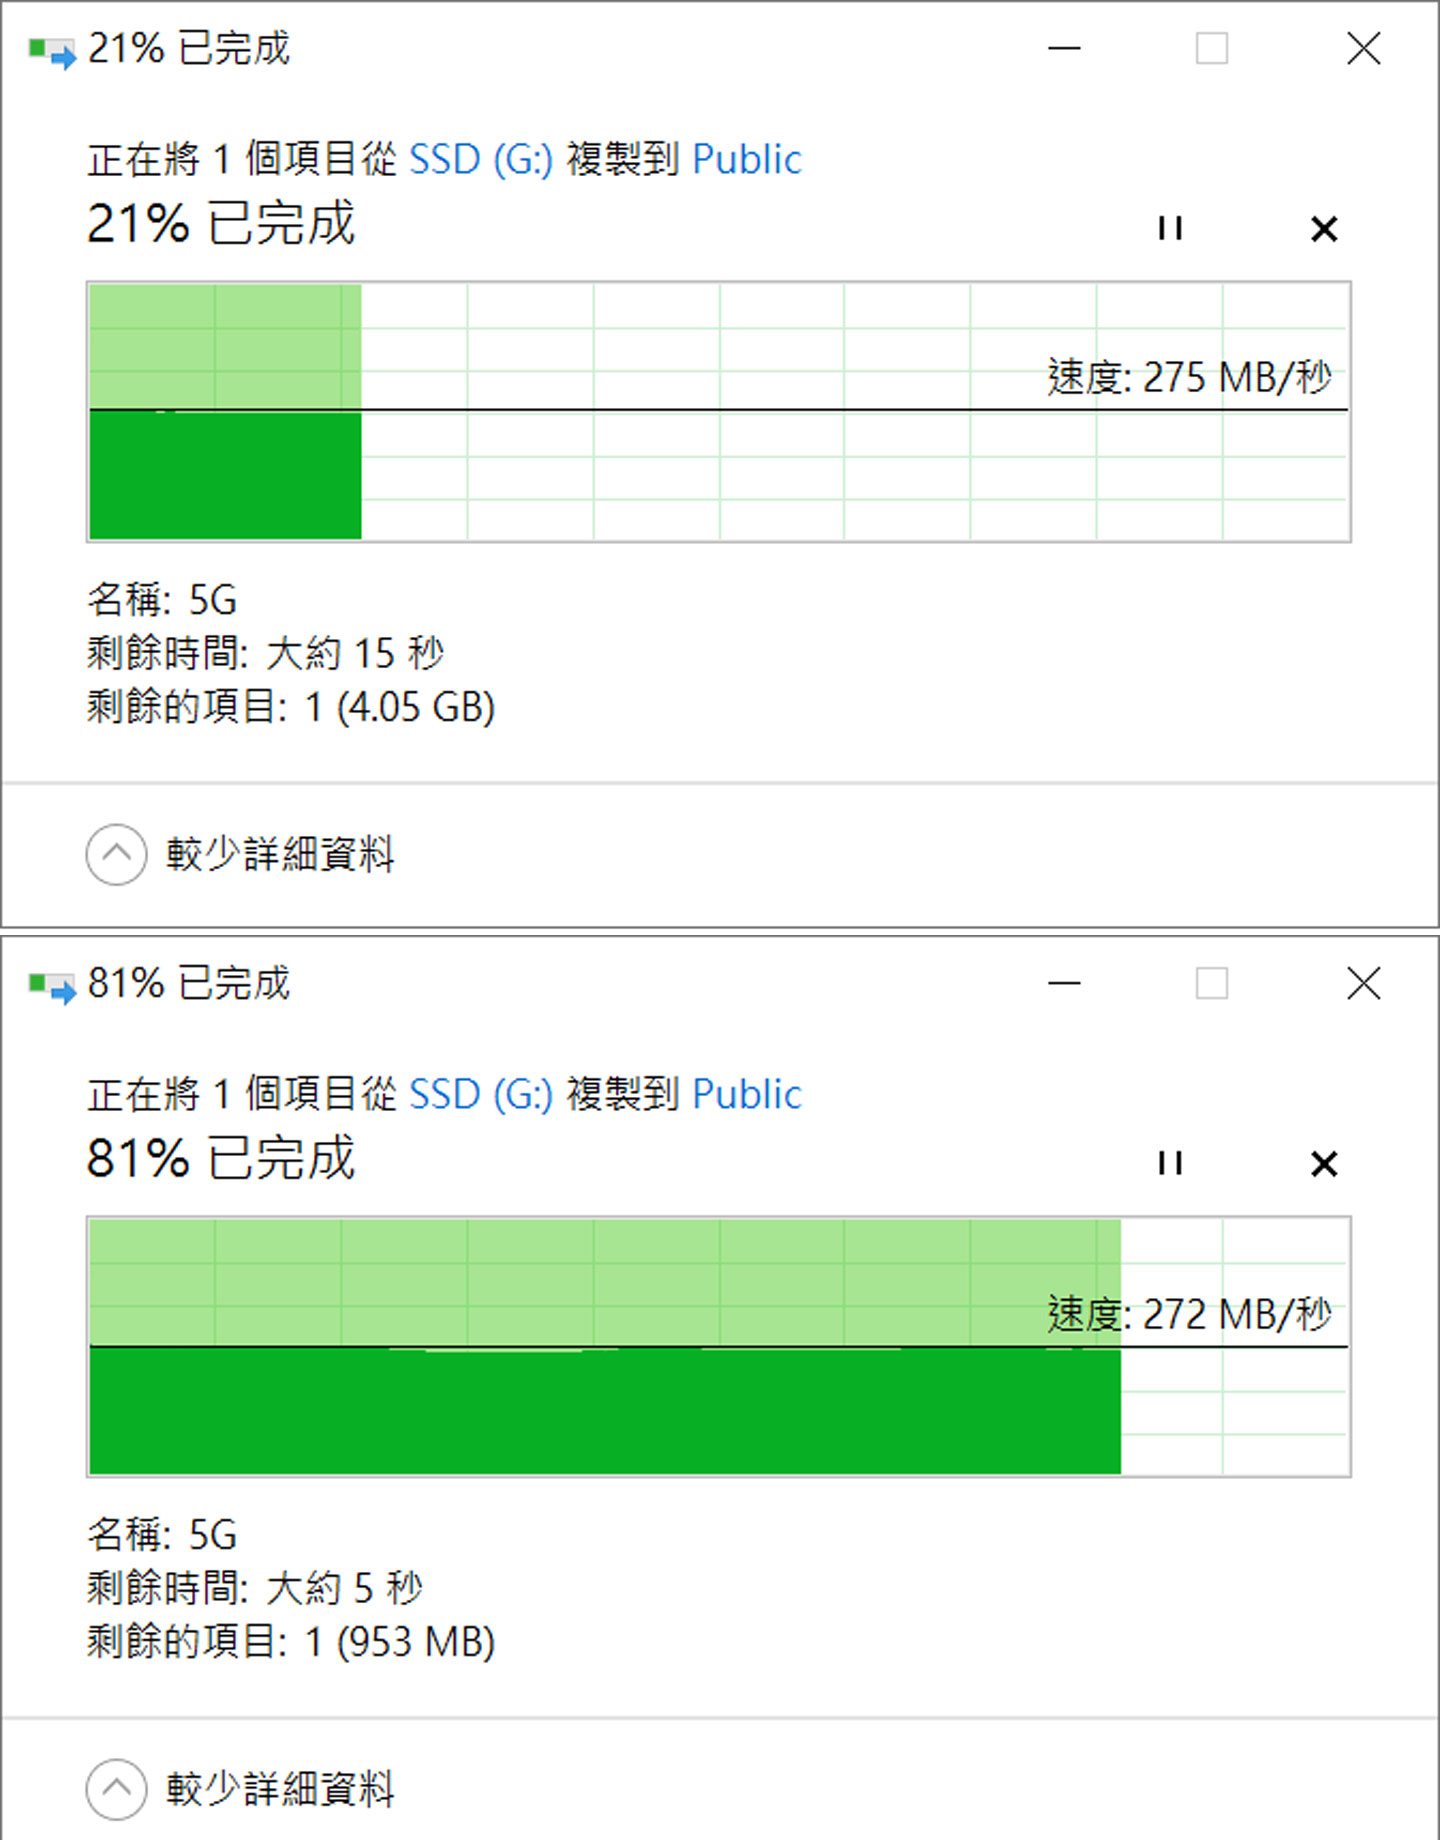 實際透過 SMB 的方式從電腦端傳輸 5G 單檔至 安裝 Toshiba MG10 20TB 版的 NQNAP TS-1655 的共用資料夾，傳輸前後速度落在 272 MB/s - 275 MB/s 之間。